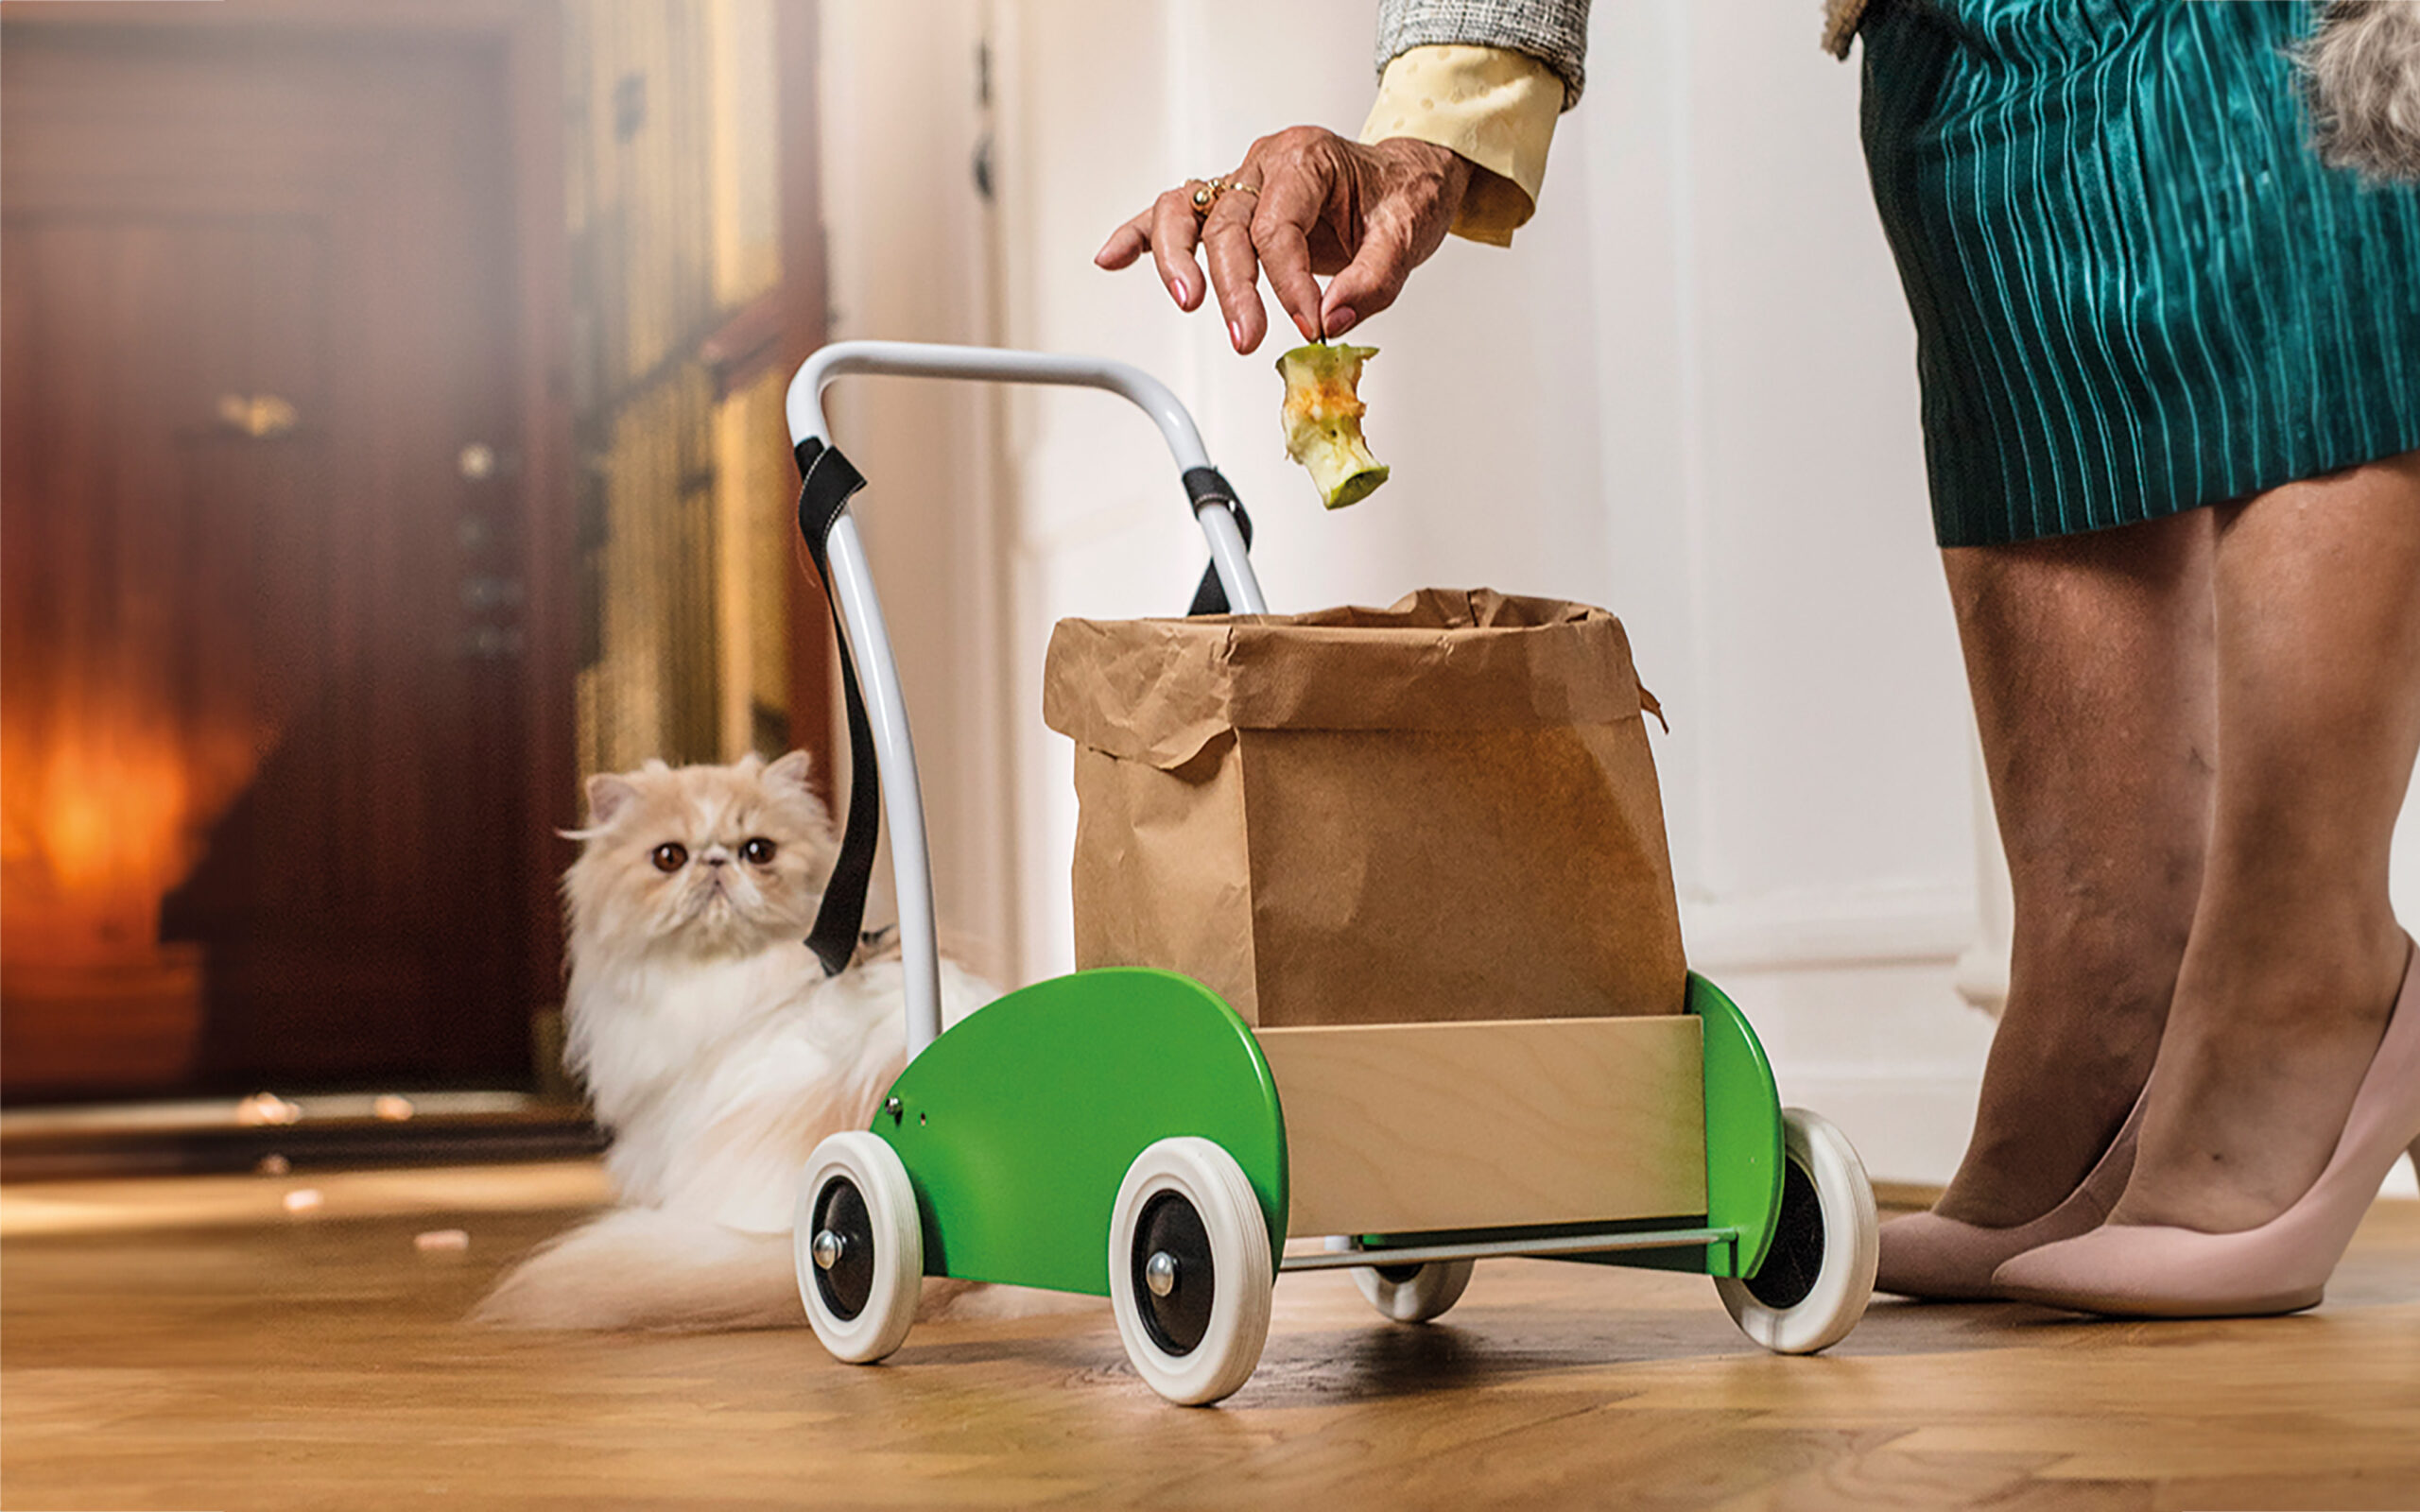 En dam med kjol och högklackade skor lägger ner ett äppleskrott i en matavfallspåse som står på en "lära-gå-vagn". Bakom vagnen ligger en vit/beige katt.